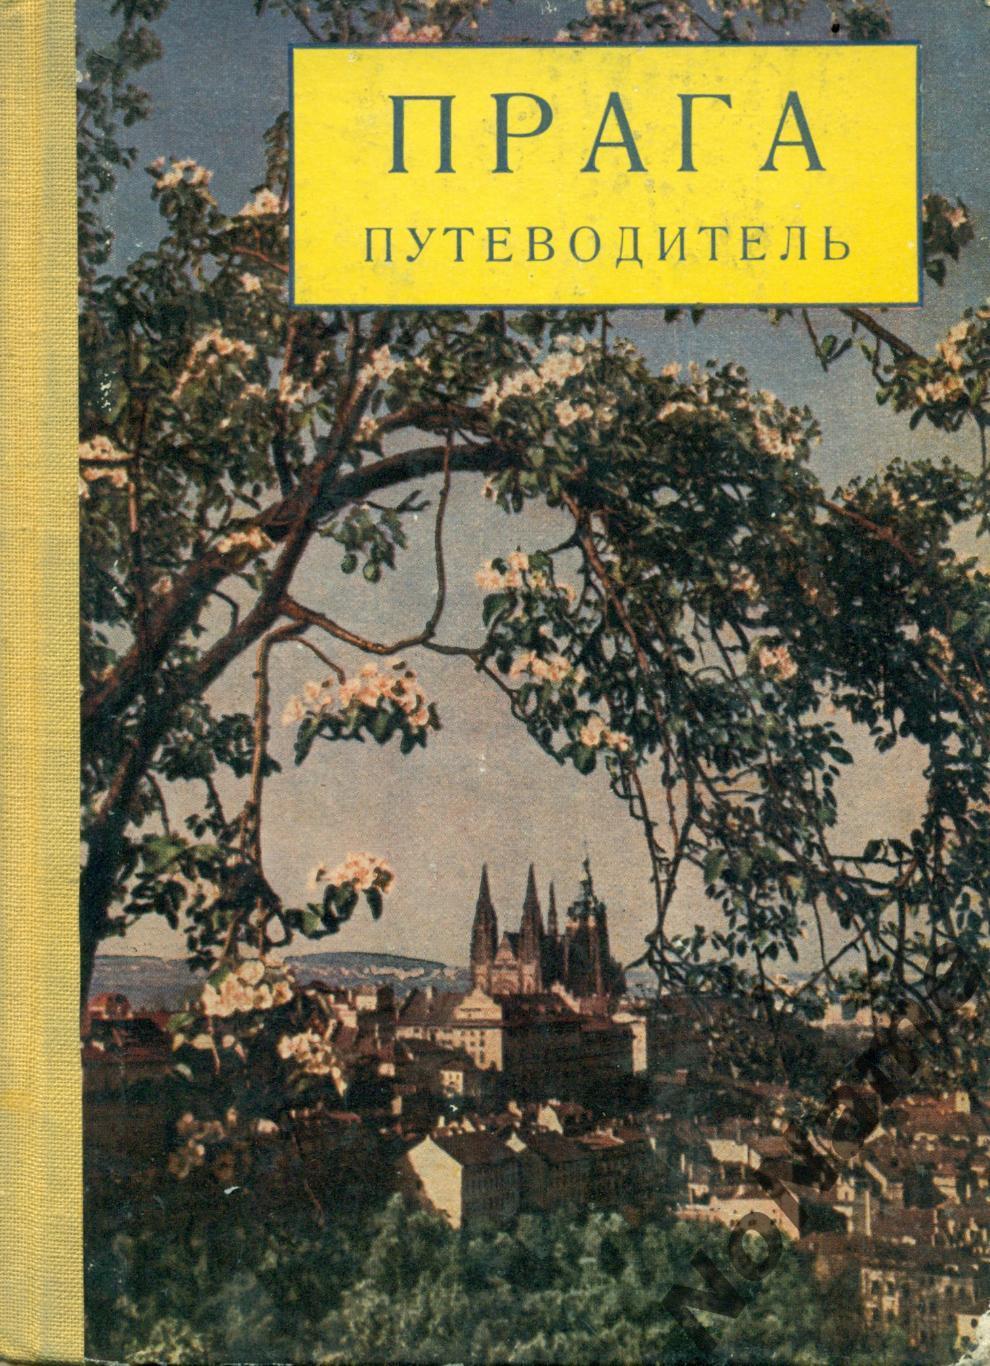 «Прага». Путеводитель. 1960 г., 184 стр.